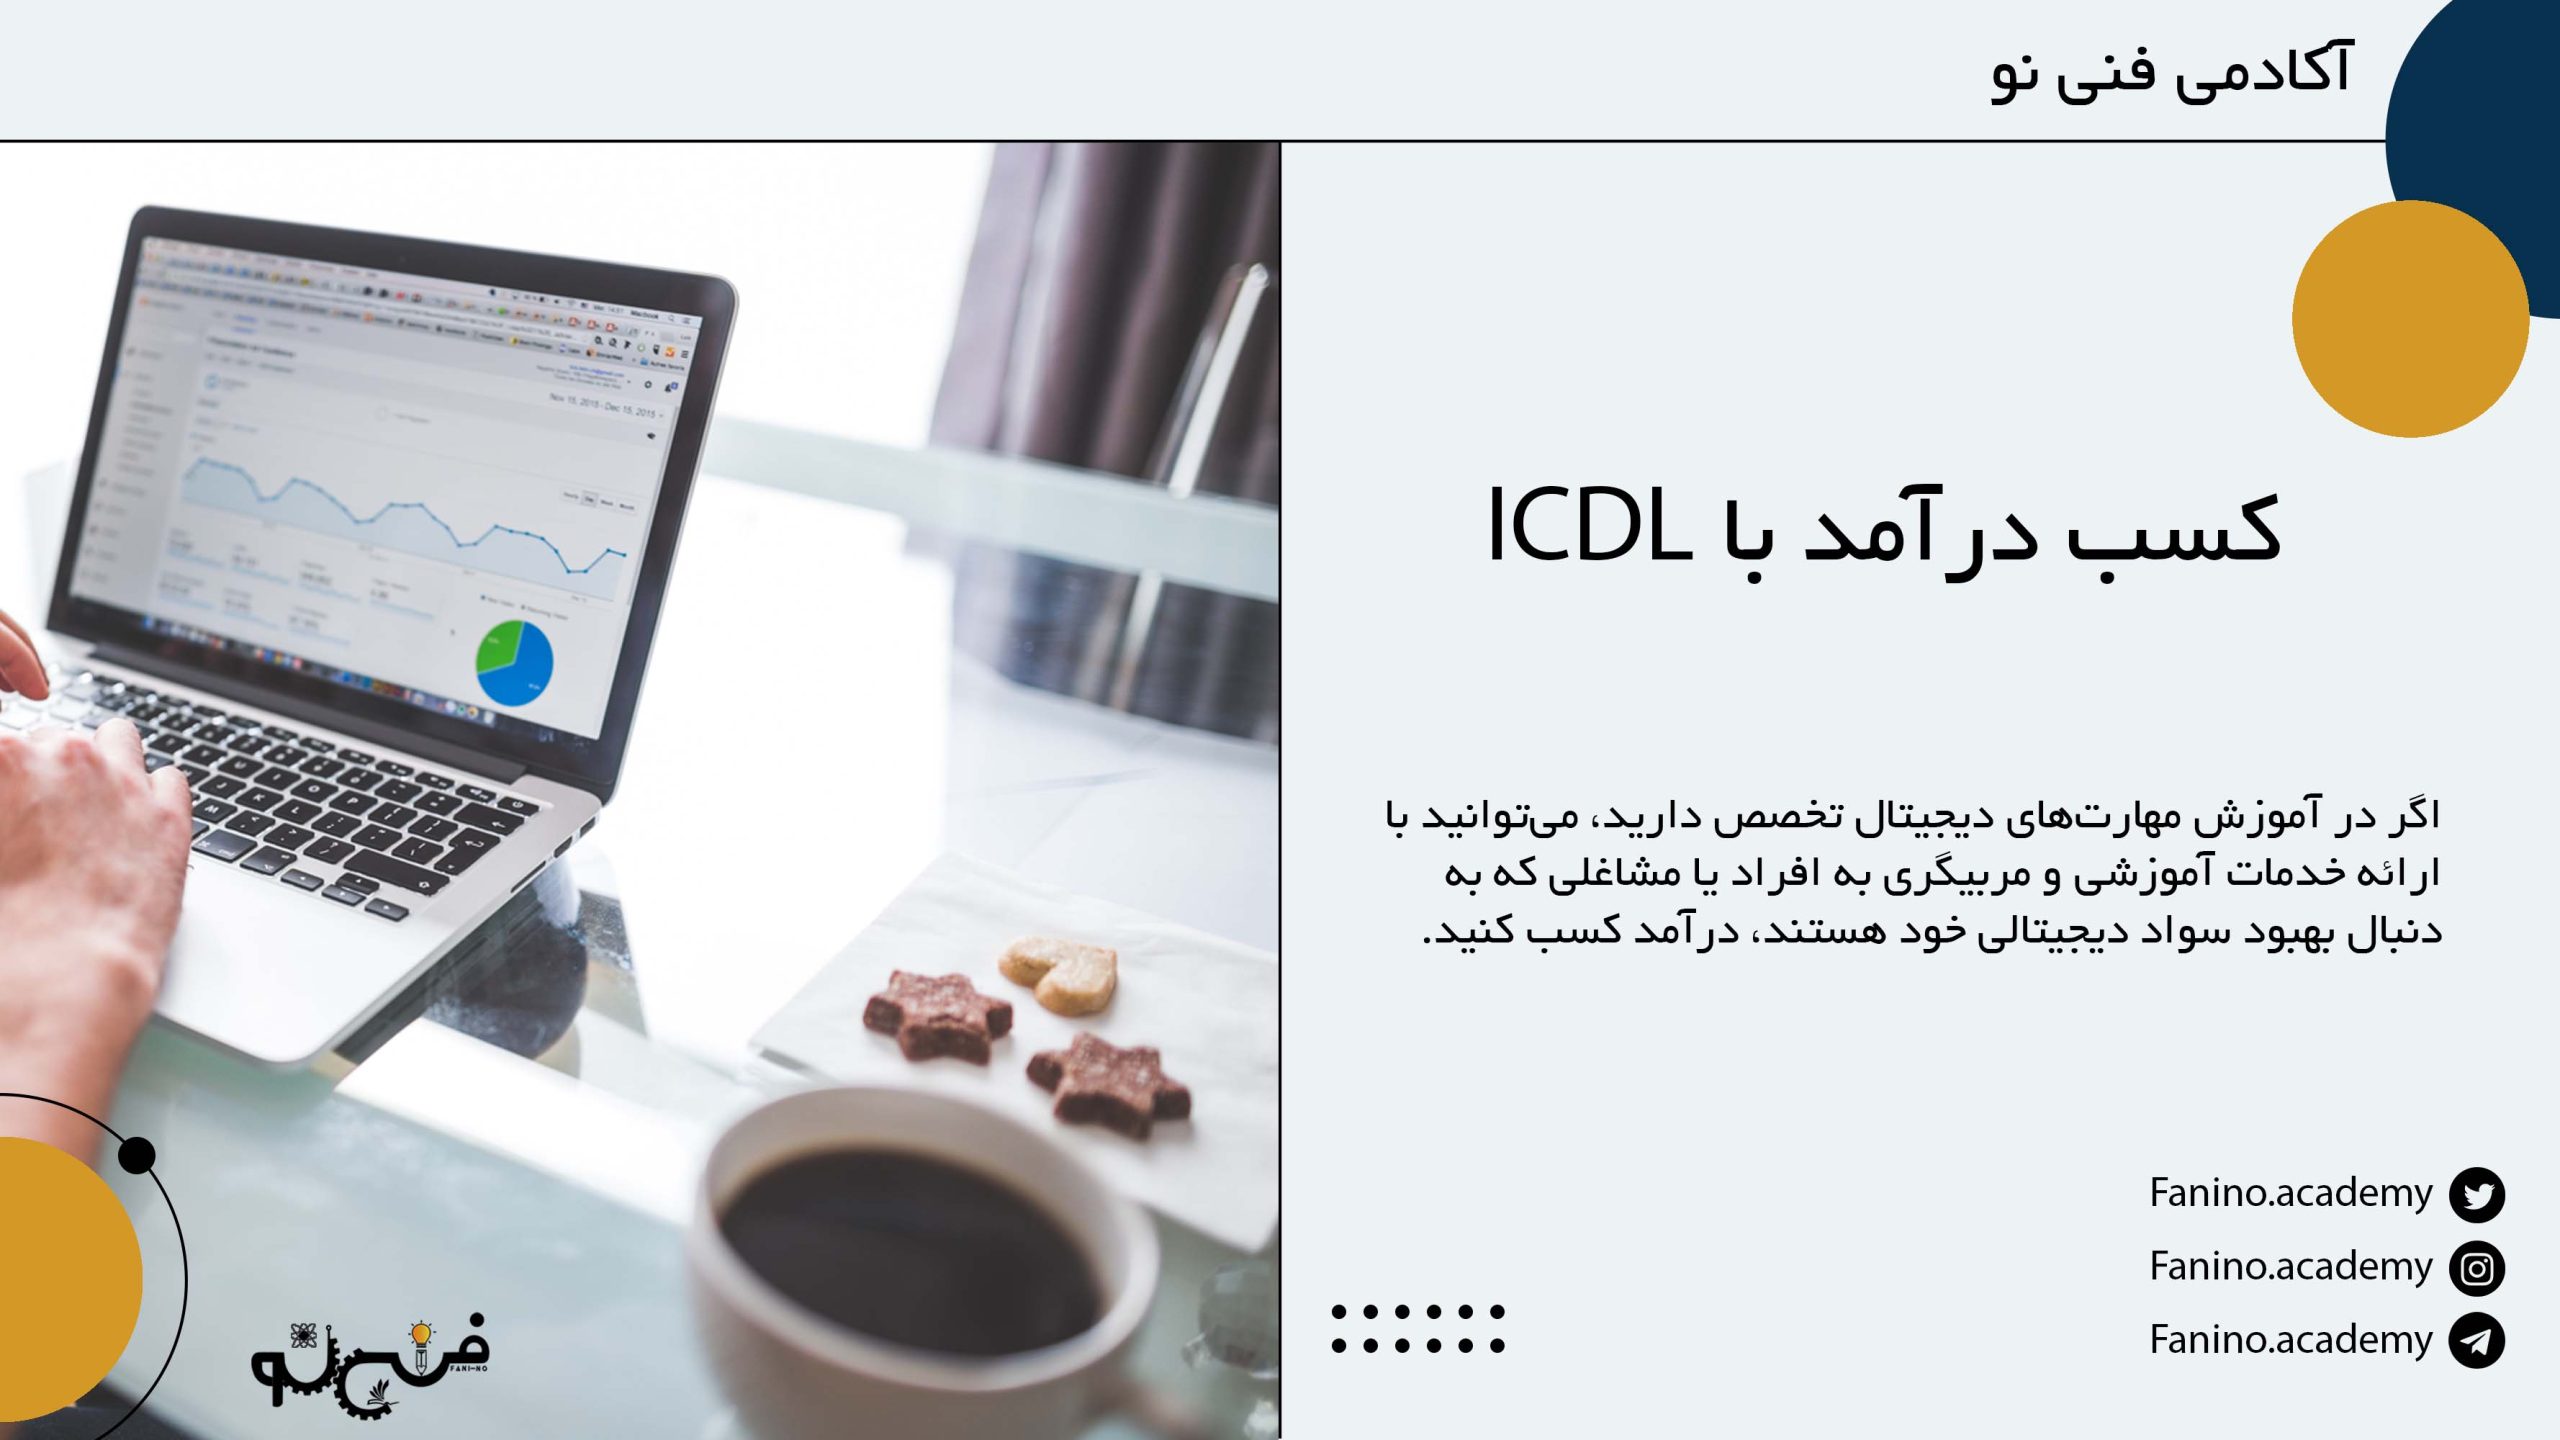 کسب درآمد با ICDL